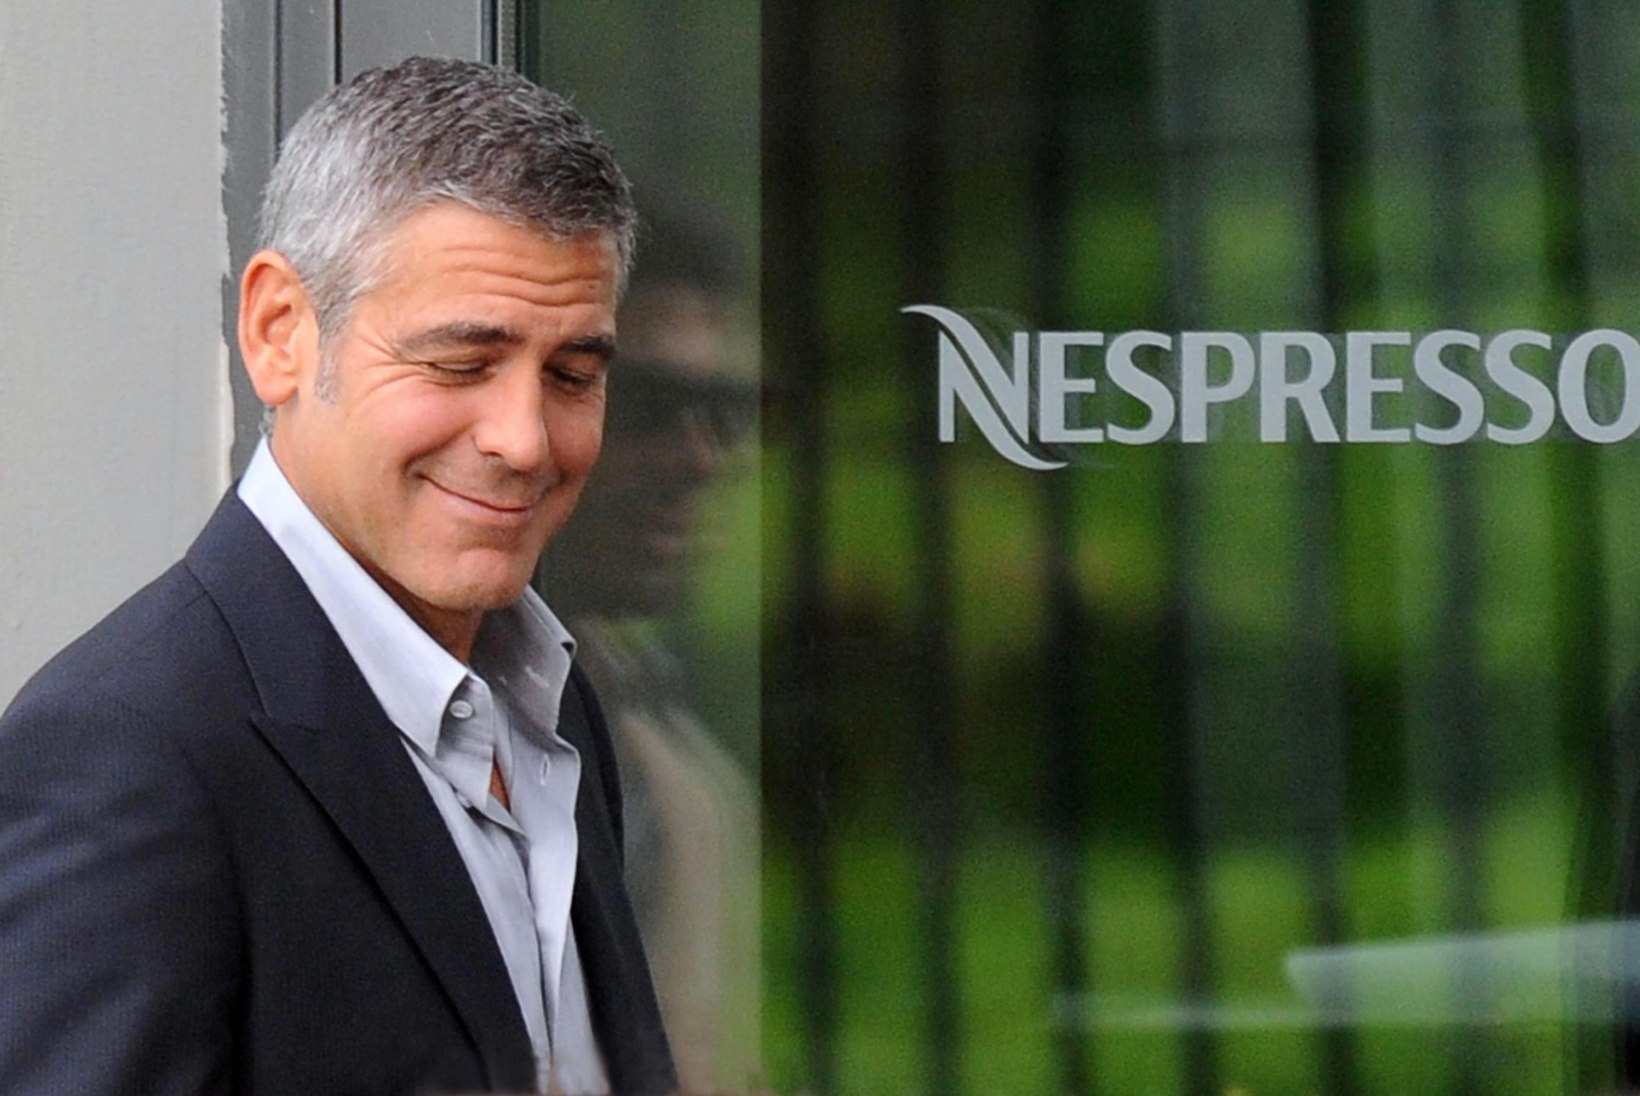 ŠOKEERIV PALJASTUS: Clooney reklaamitav kohv valmib lapsorjade töö tulemusel